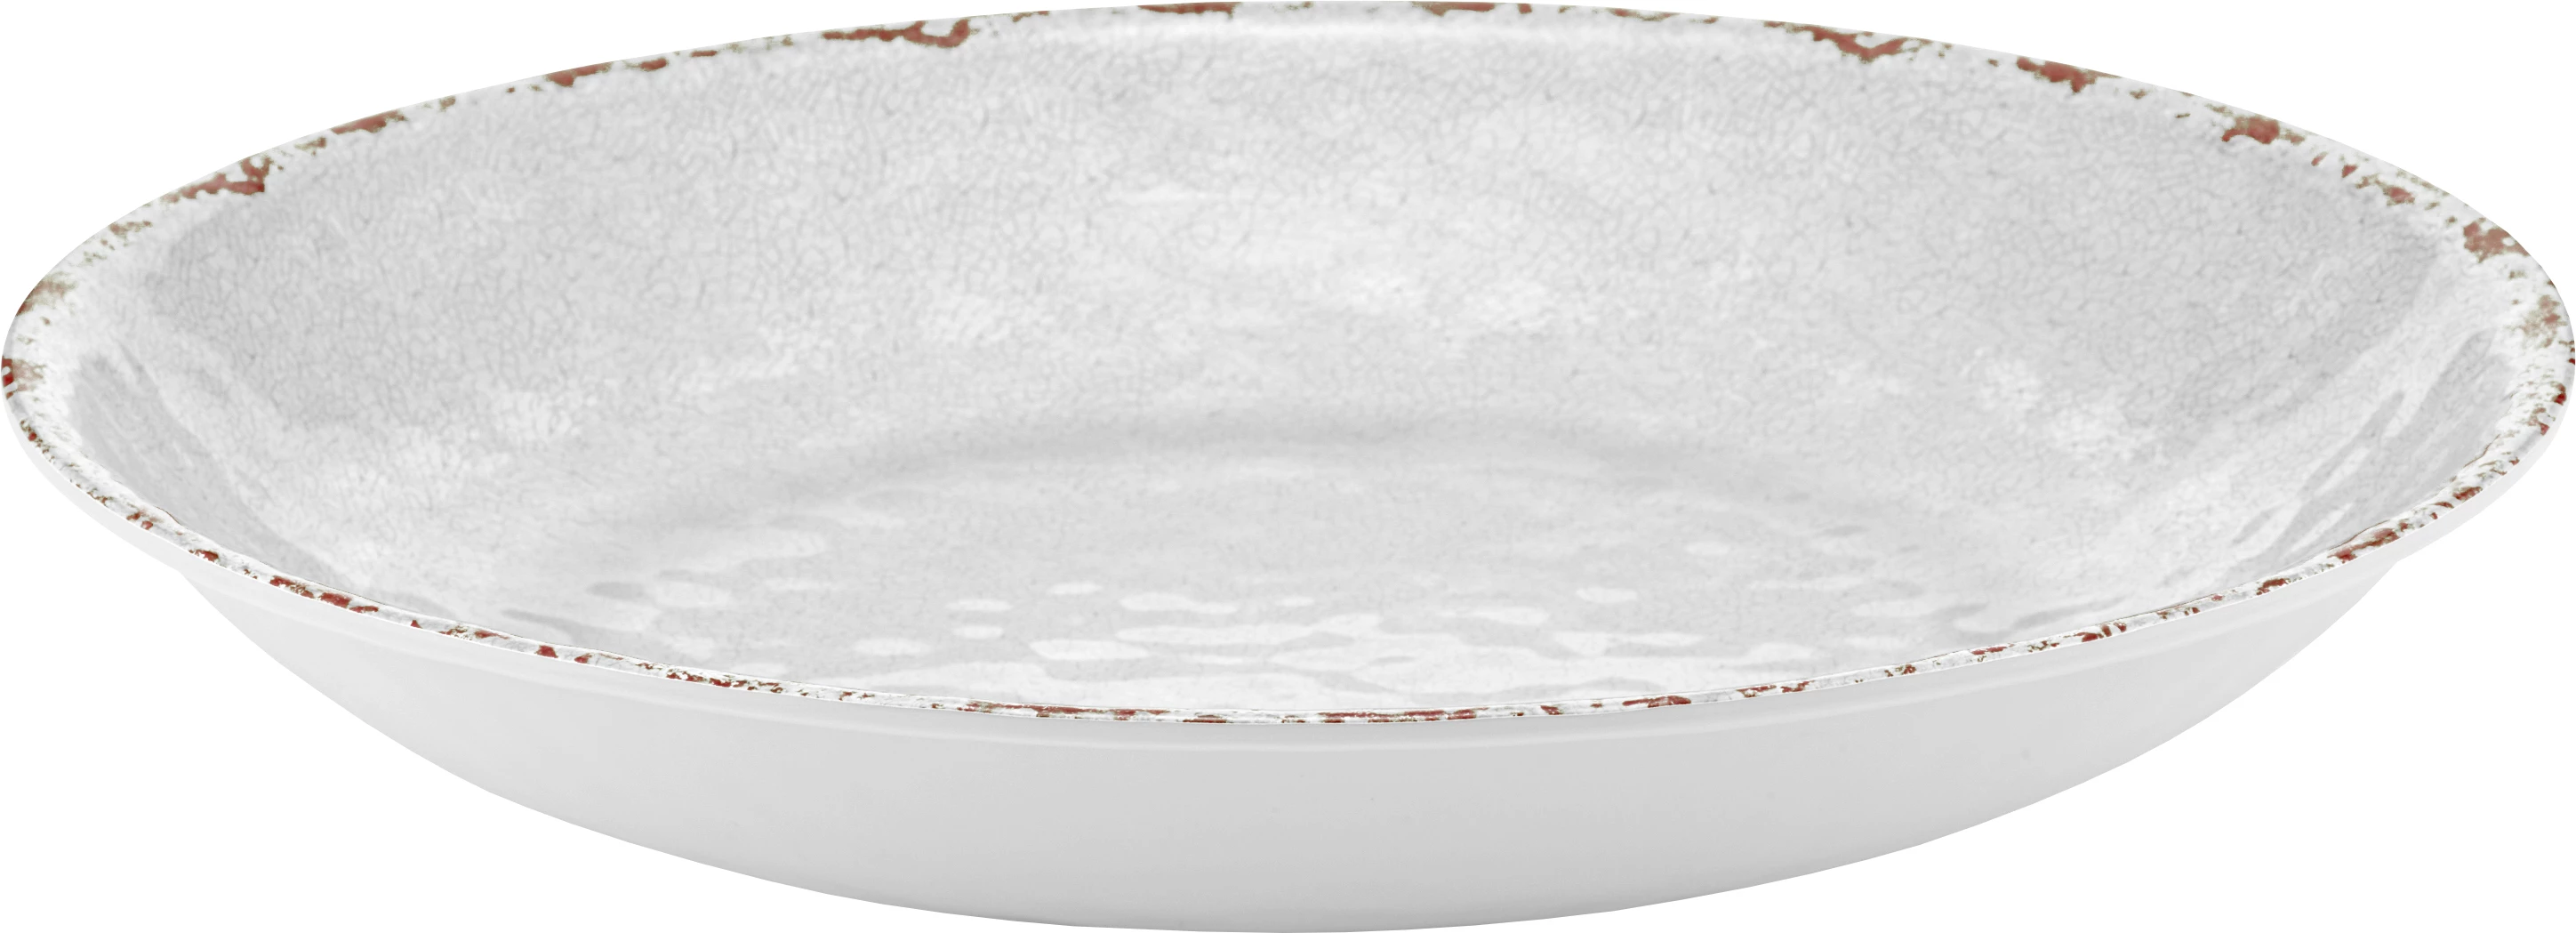 Dalebrook Casablanca skål, hvid, 600 cl, ø42 cm